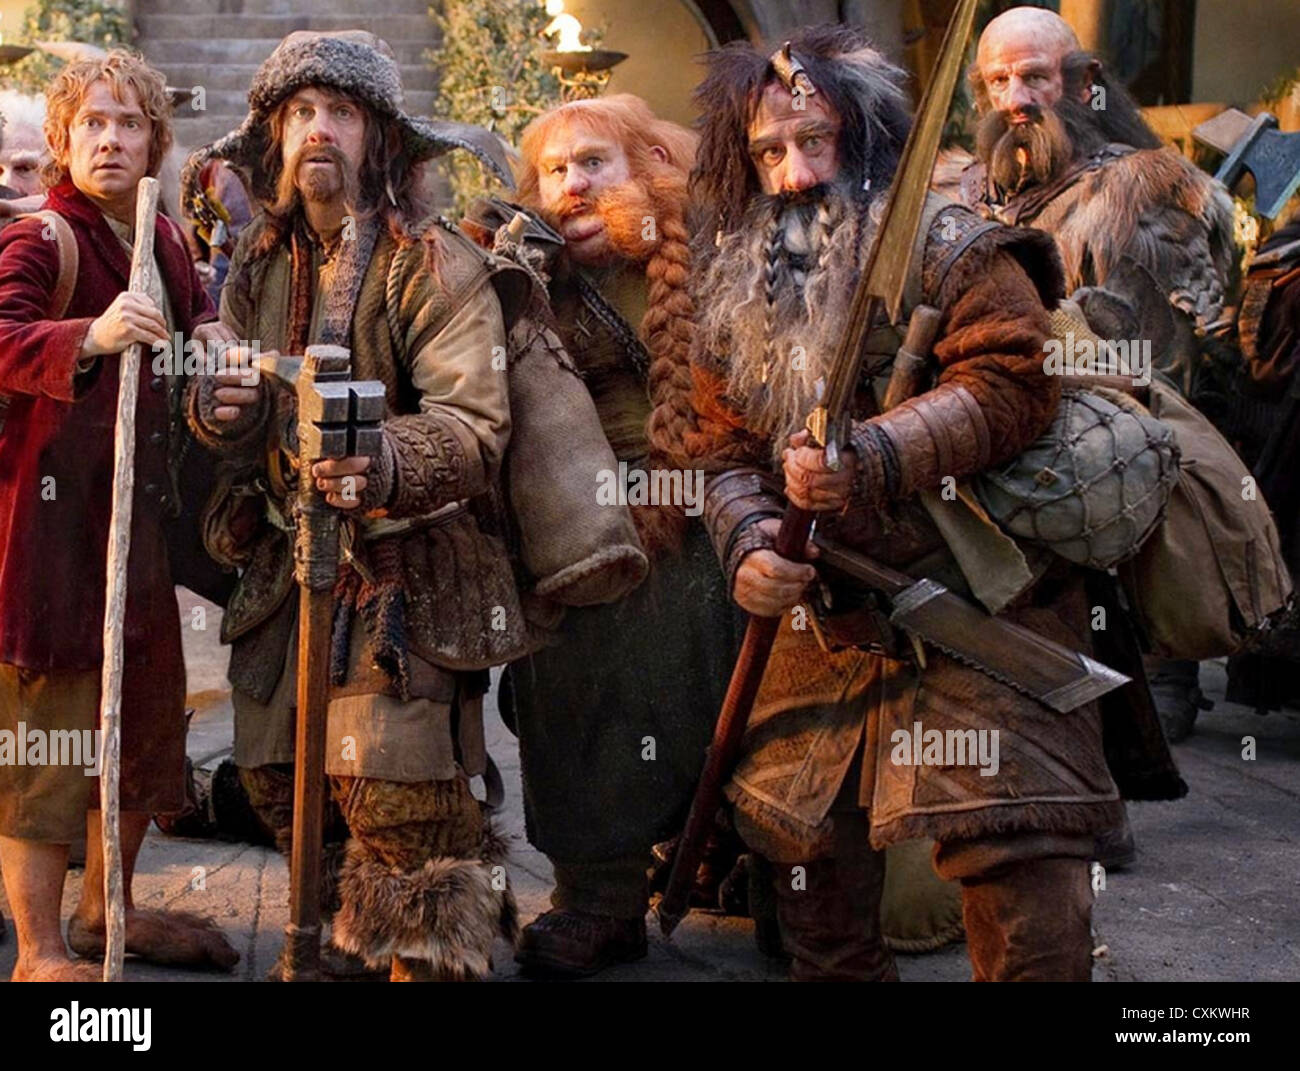 Le Hobbit : Un voyage inattendu Warner Bros Pictures 2012 film avec Martin Freeman en Bilbo Sacquet à gauche Banque D'Images